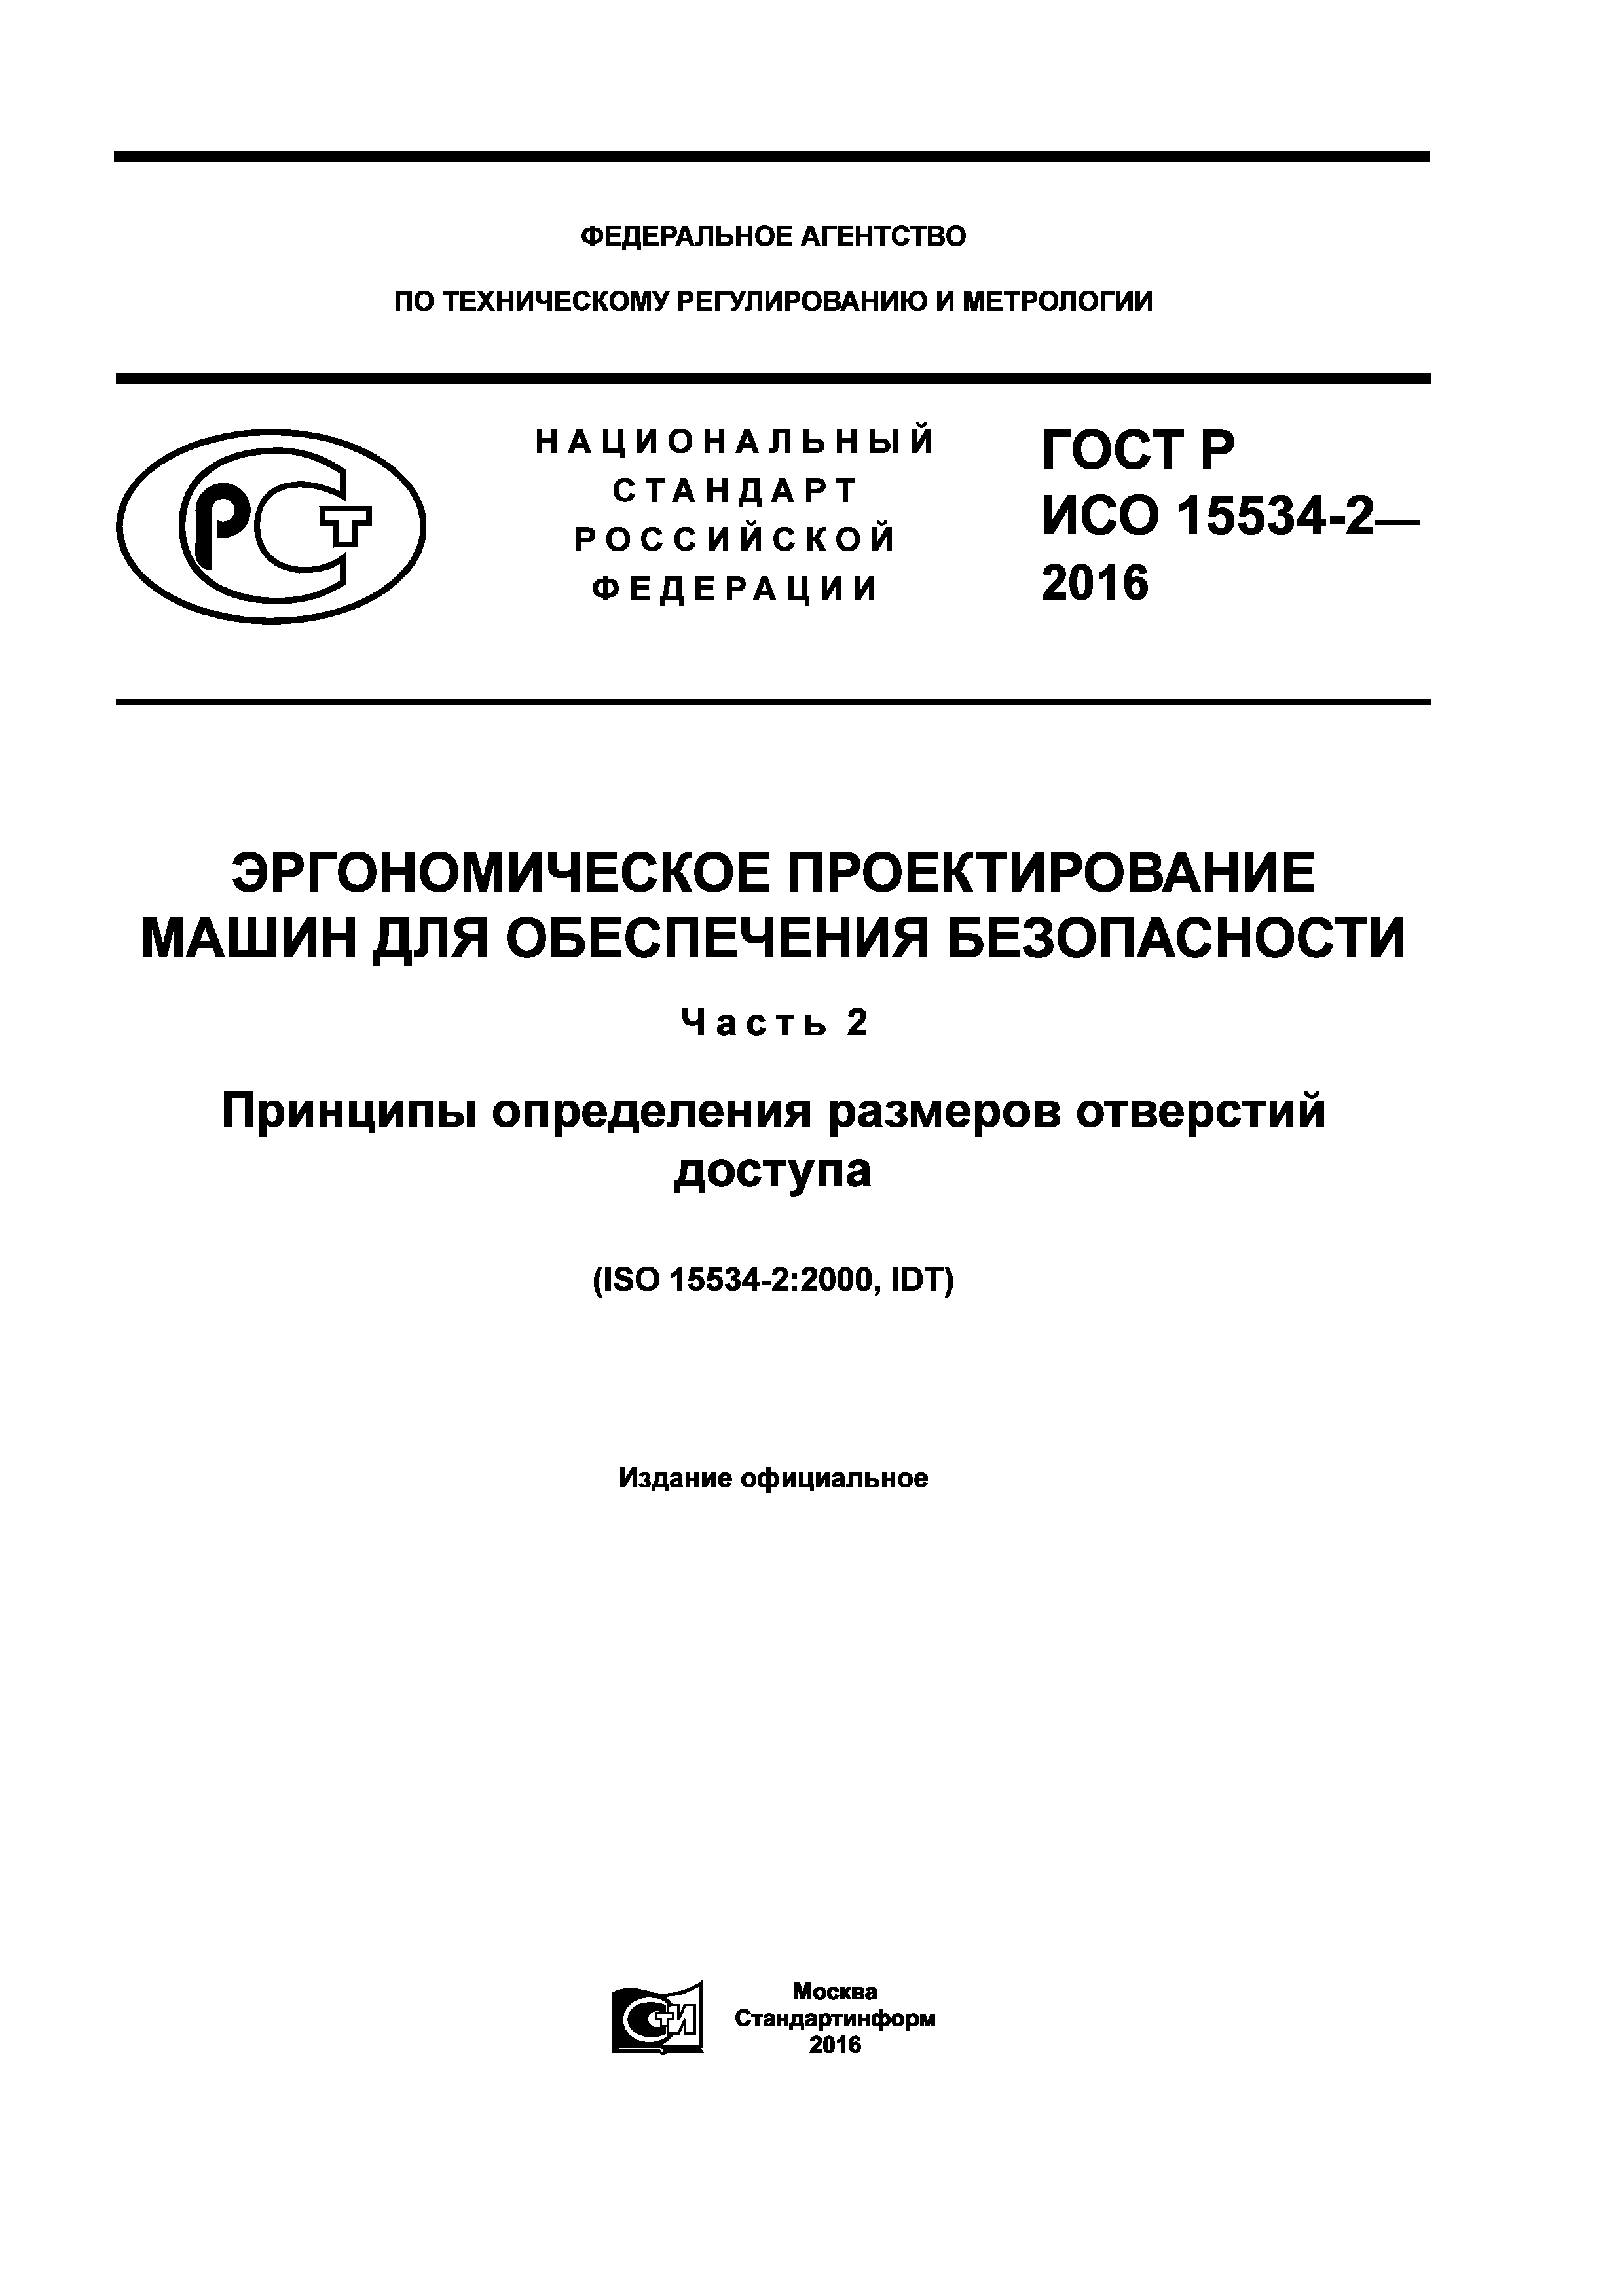 ГОСТ Р ИСО 15534-2-2016